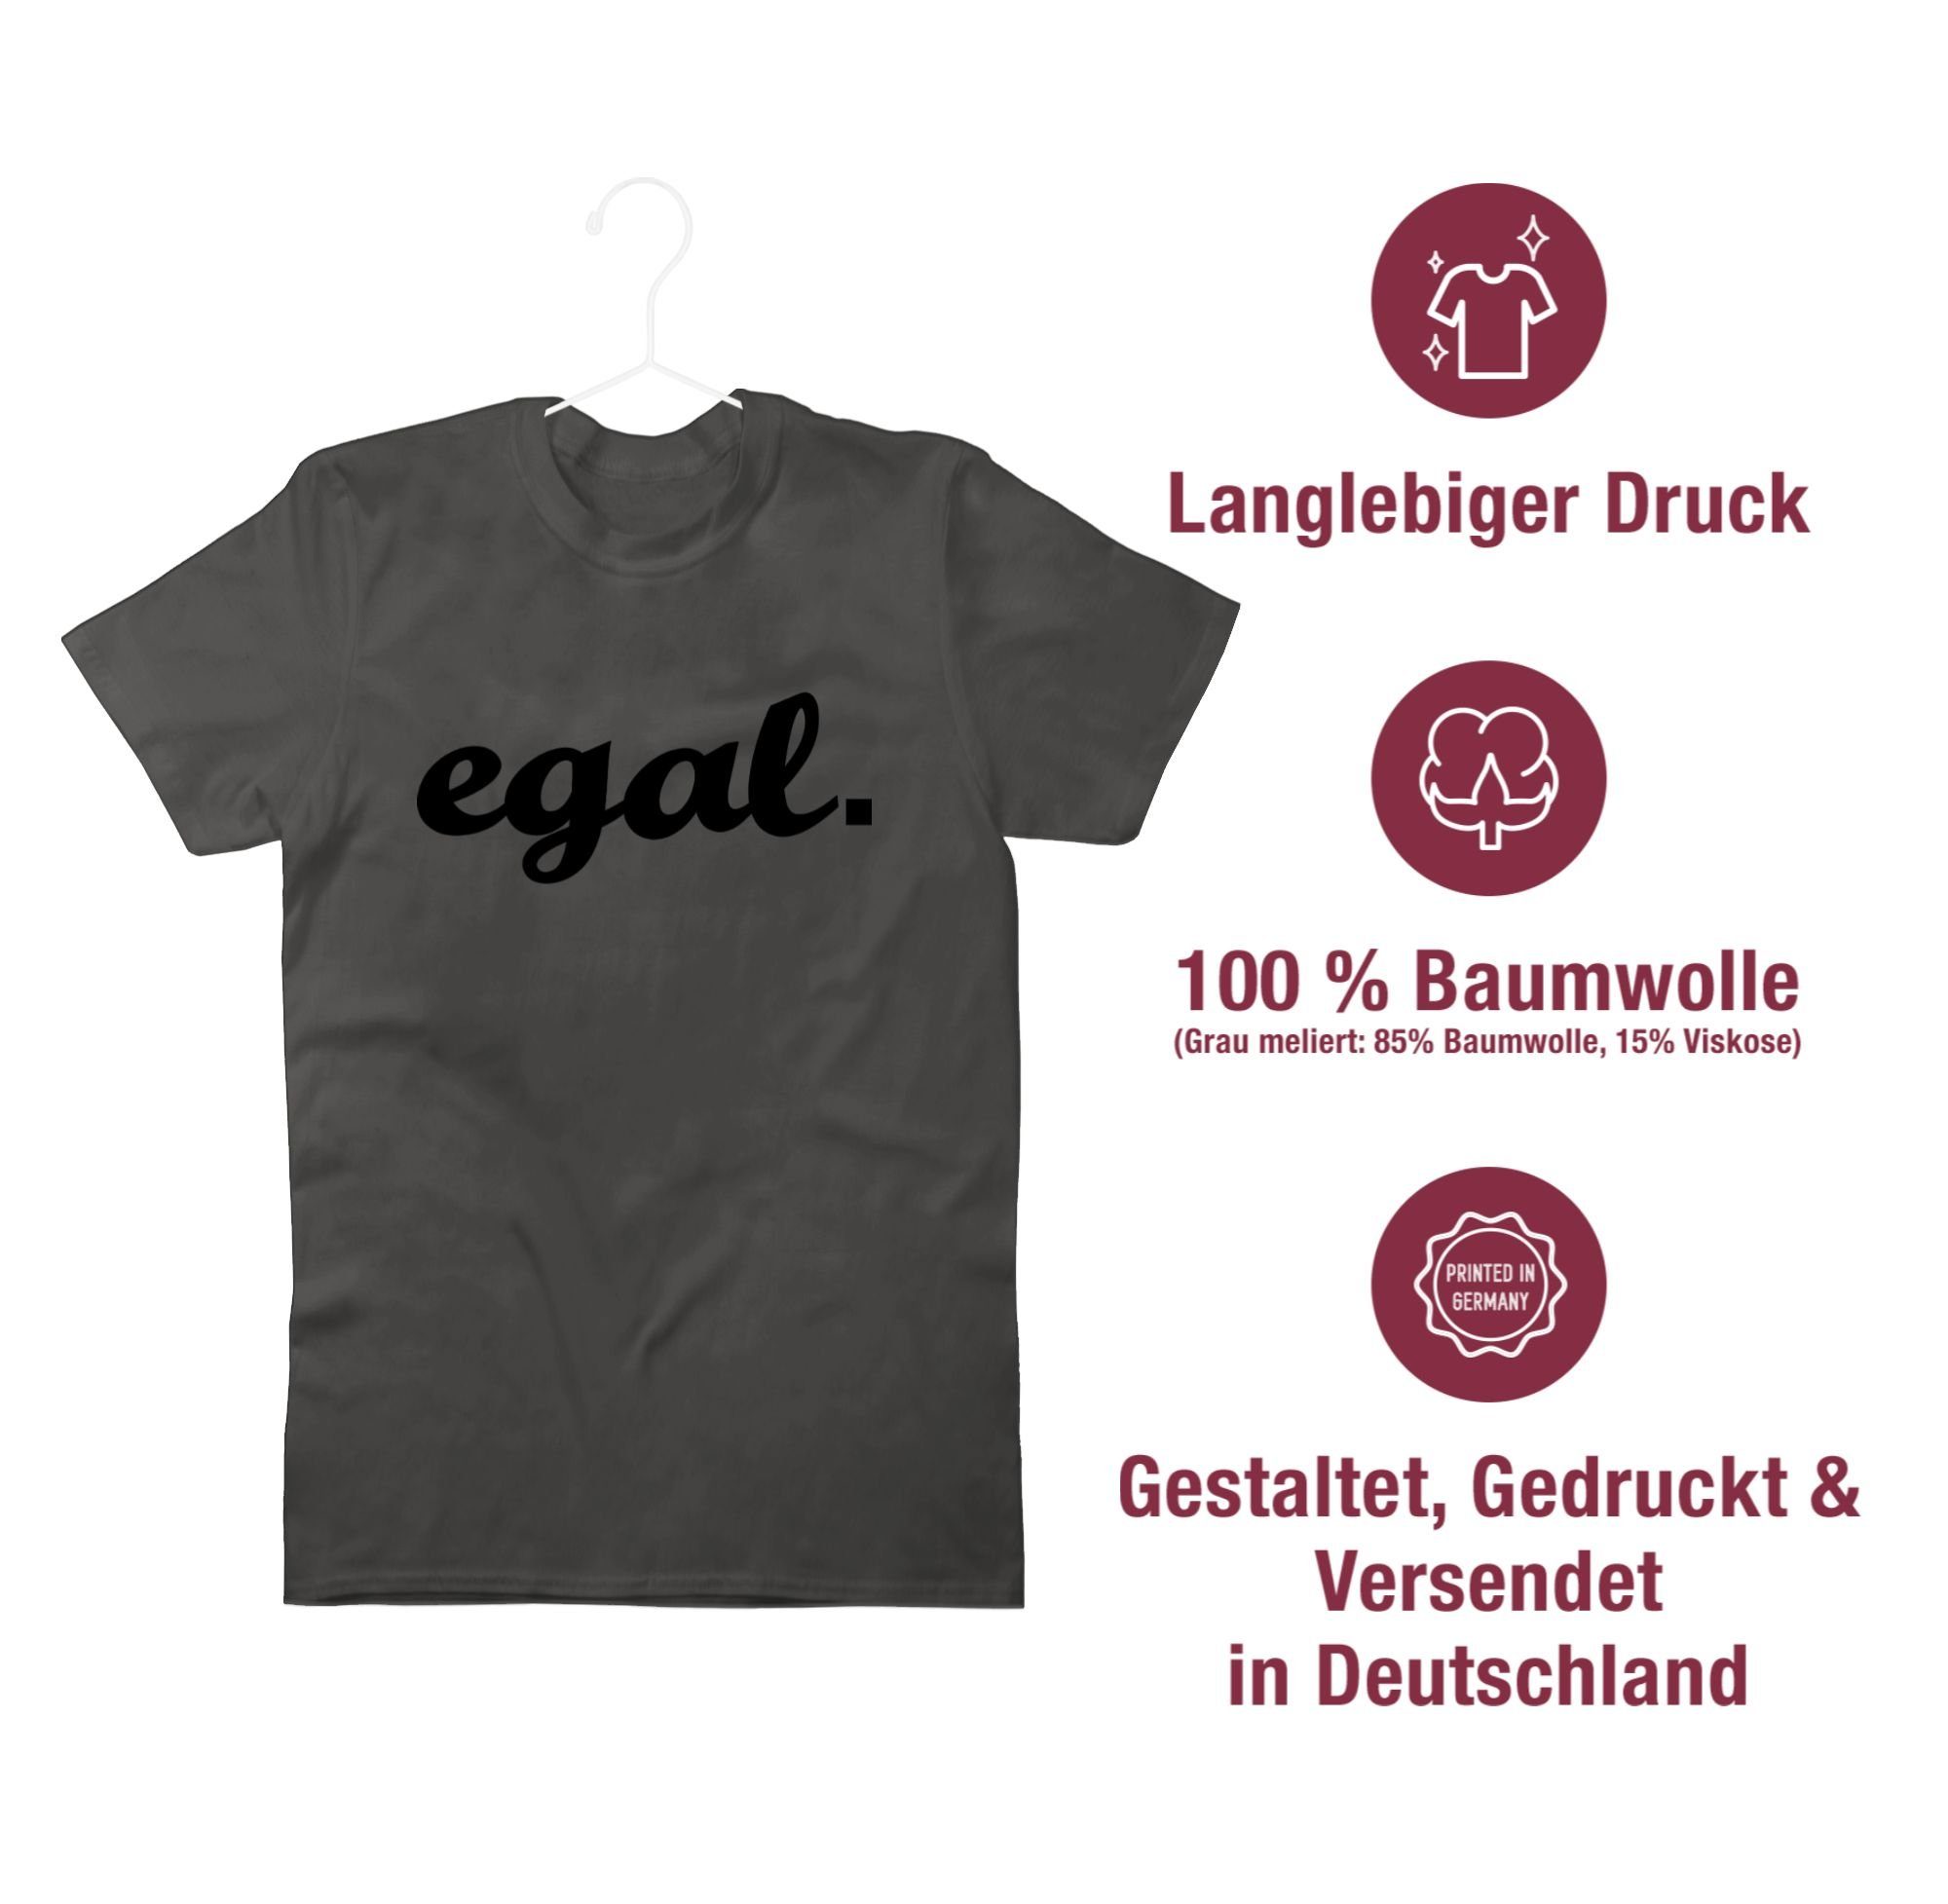 Statement Kursiv Sprüche T-Shirt 01 - Dunkelgrau Egal Shirtracer schwarz